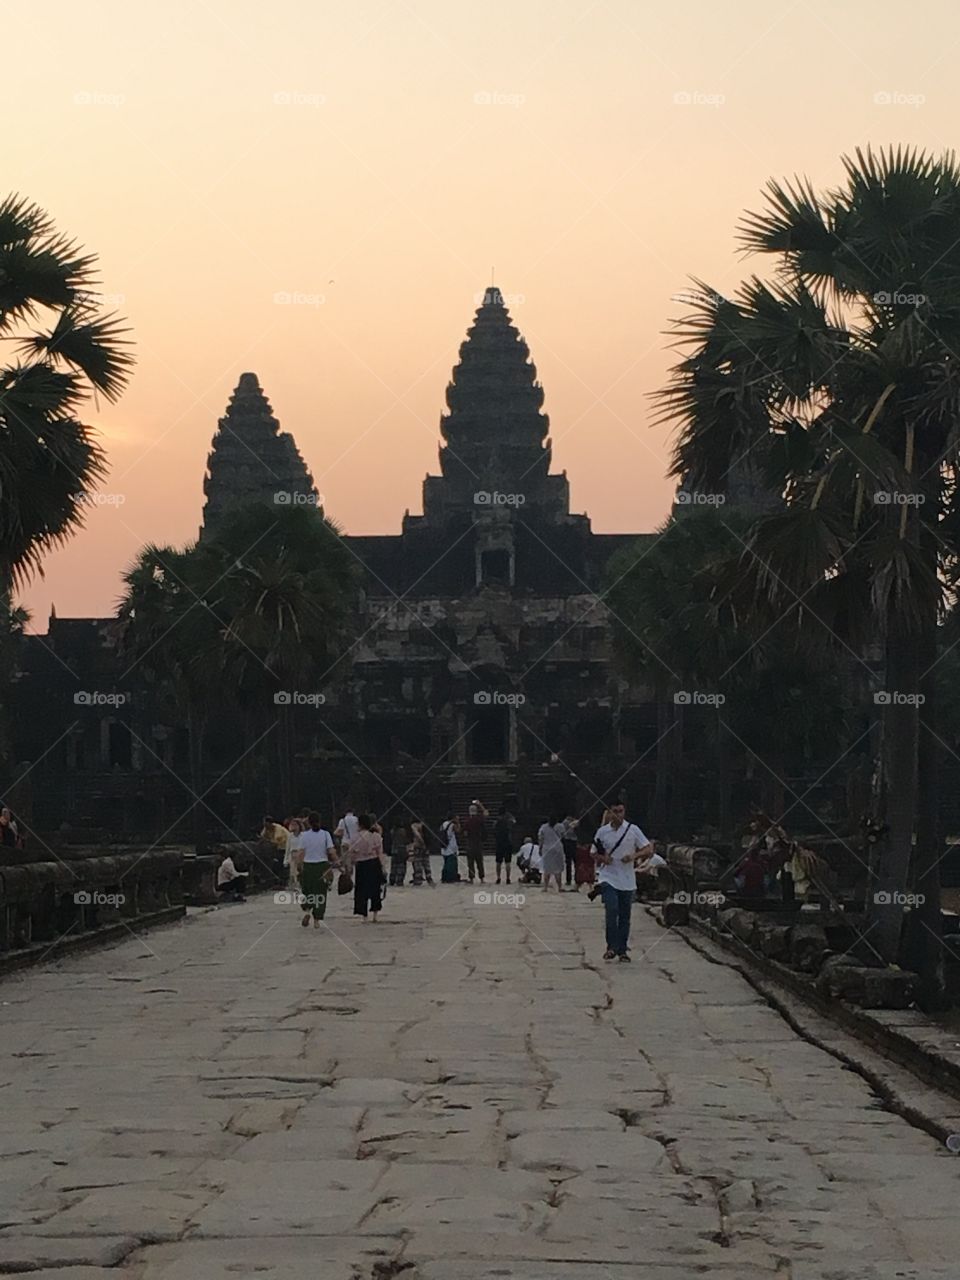 The entrance of Angkor wat at sunset 